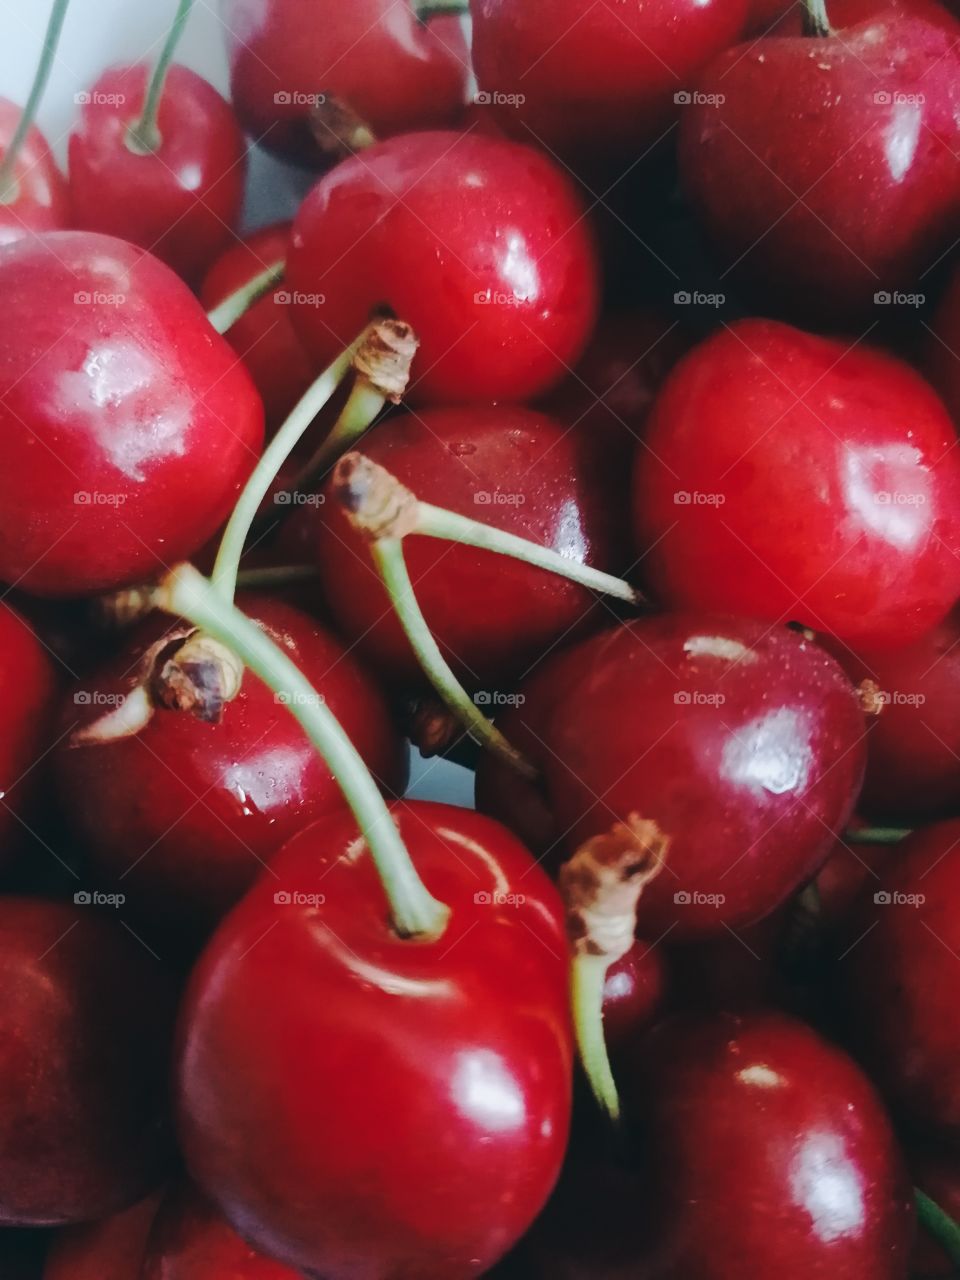 Cherry bombs